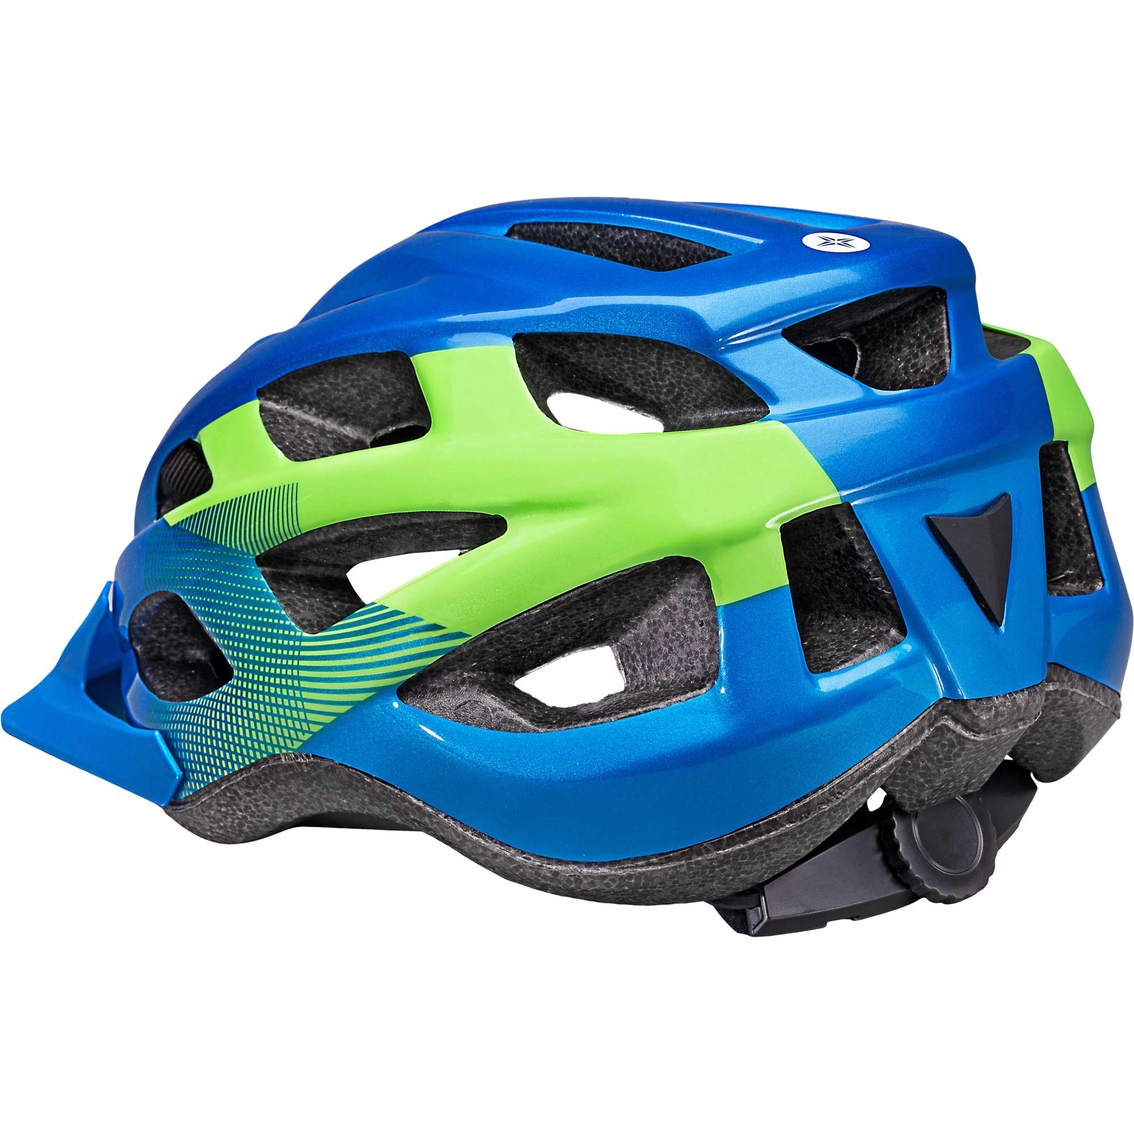 Schwinn Breeze Youth Bike Helmet Blue/Lime - Image 2 of 2